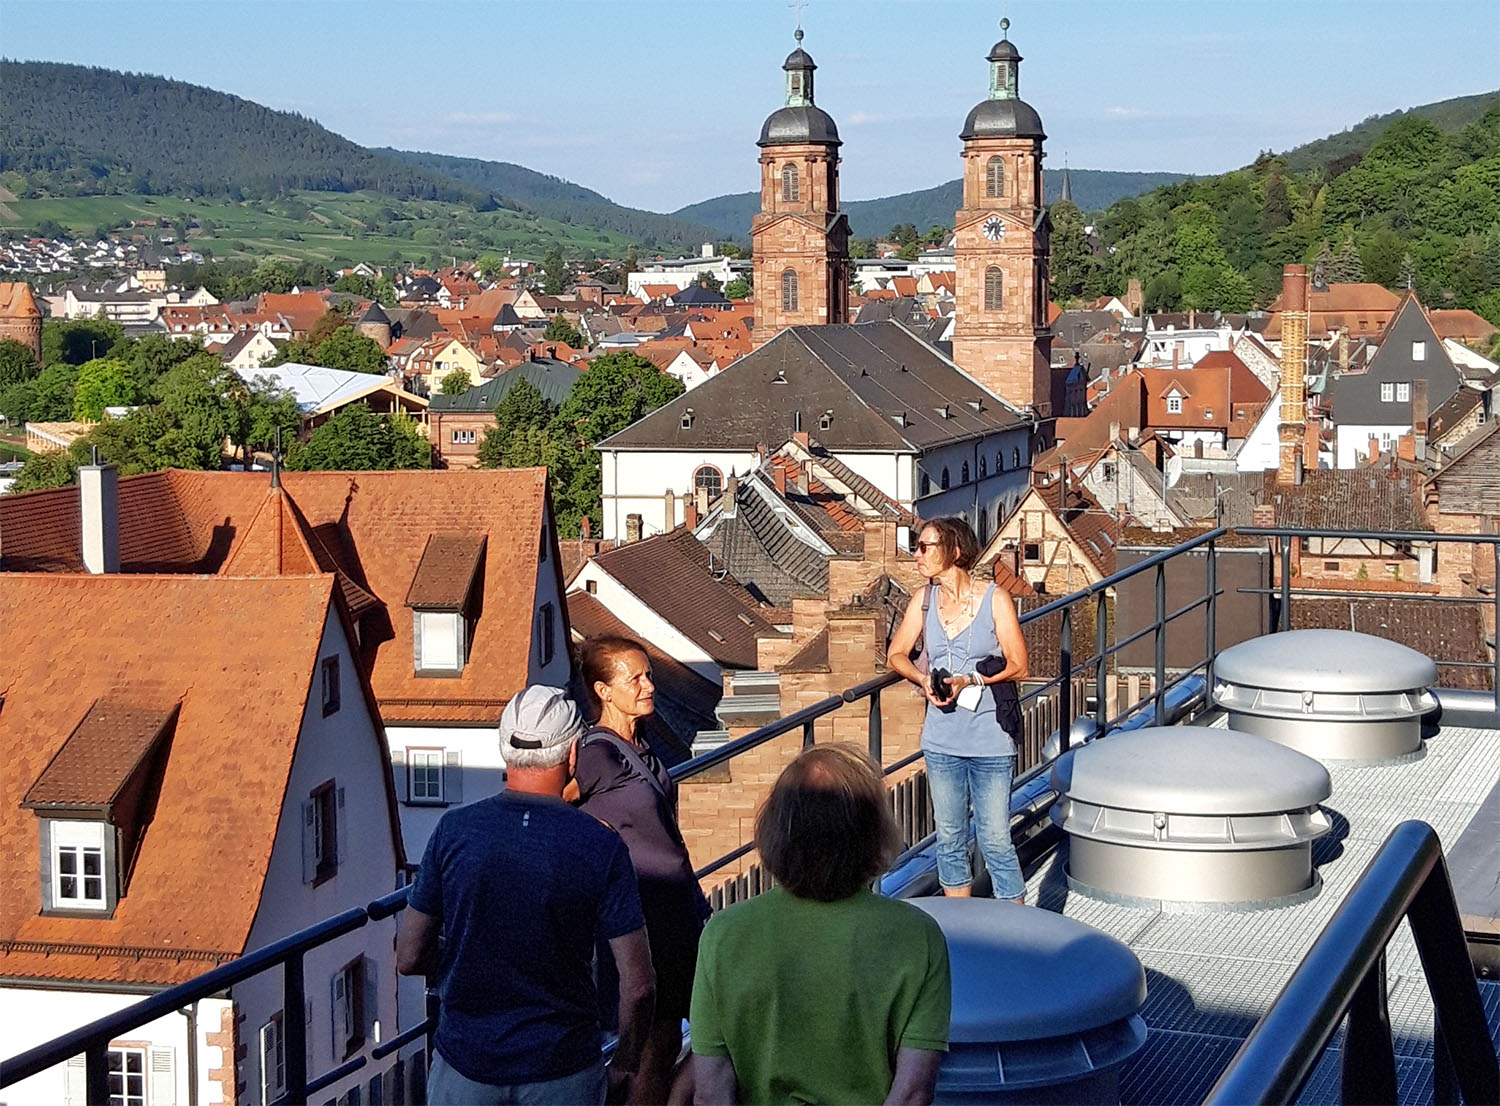 Auf der Dachterrasse der Brauerei, in der das Testsieger-Bier des Bieradlon 2022 gebraut wird: die Faust-Brauerei in Miltenberg. Im Hintergrund Teile der historischen Altstadt
Bild: Bertram Giebeler